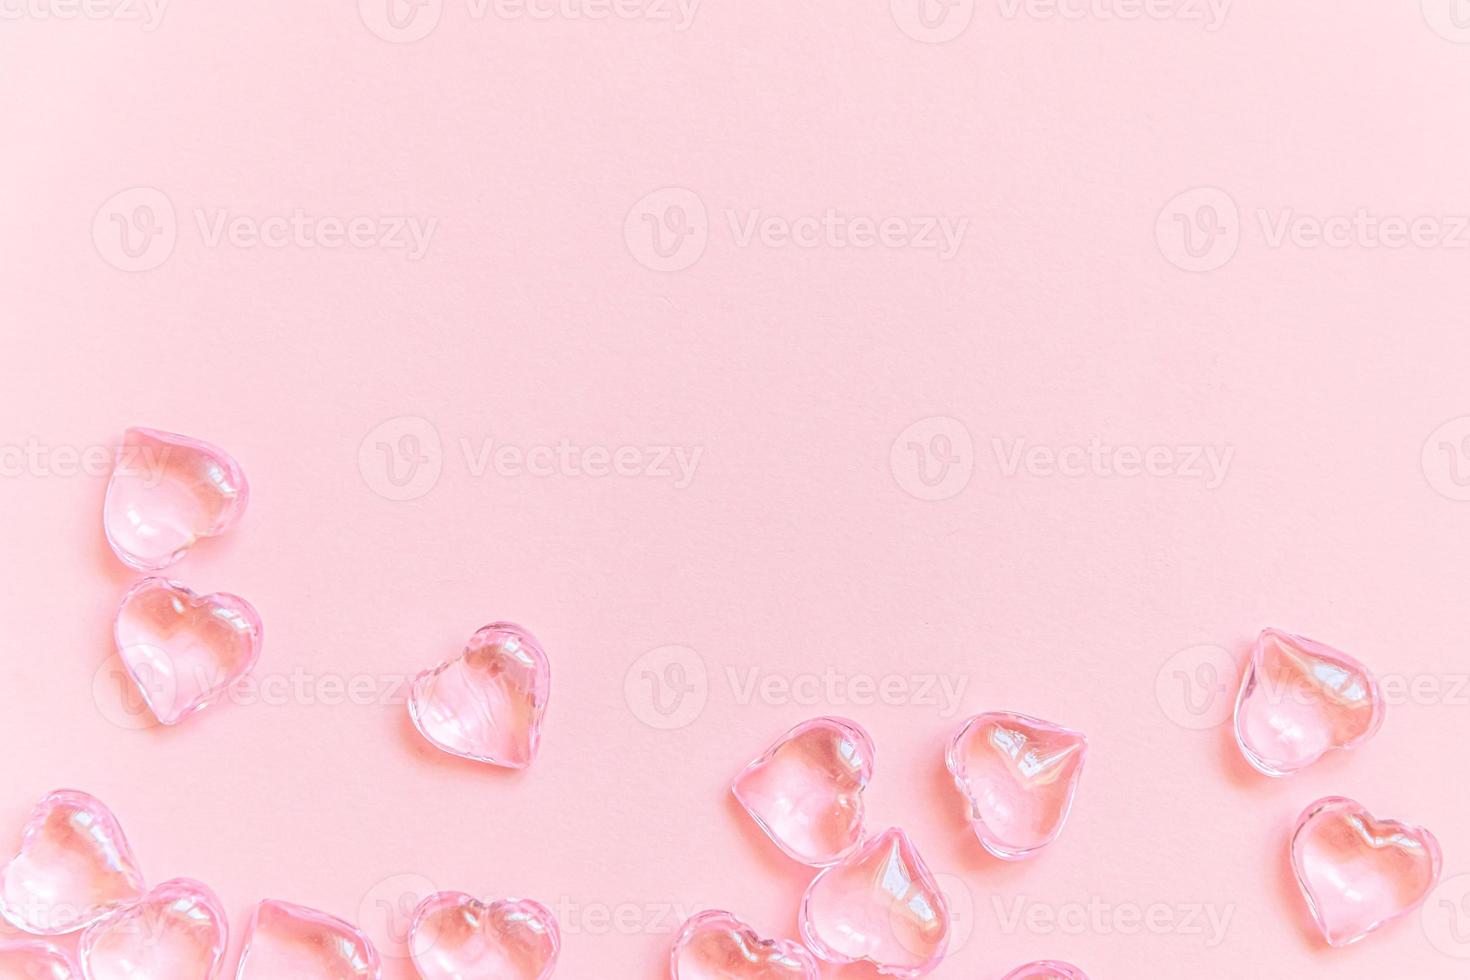 st. Valentinstag-Konzept. viele rosa herzen lokalisiert auf rosa pastellhintergrund. Postkartenbanner am Valentinstag. Liebe Datum Liebeskummer Hochzeit Romantik Symbol. draufsicht flach liegend, kopierraum foto